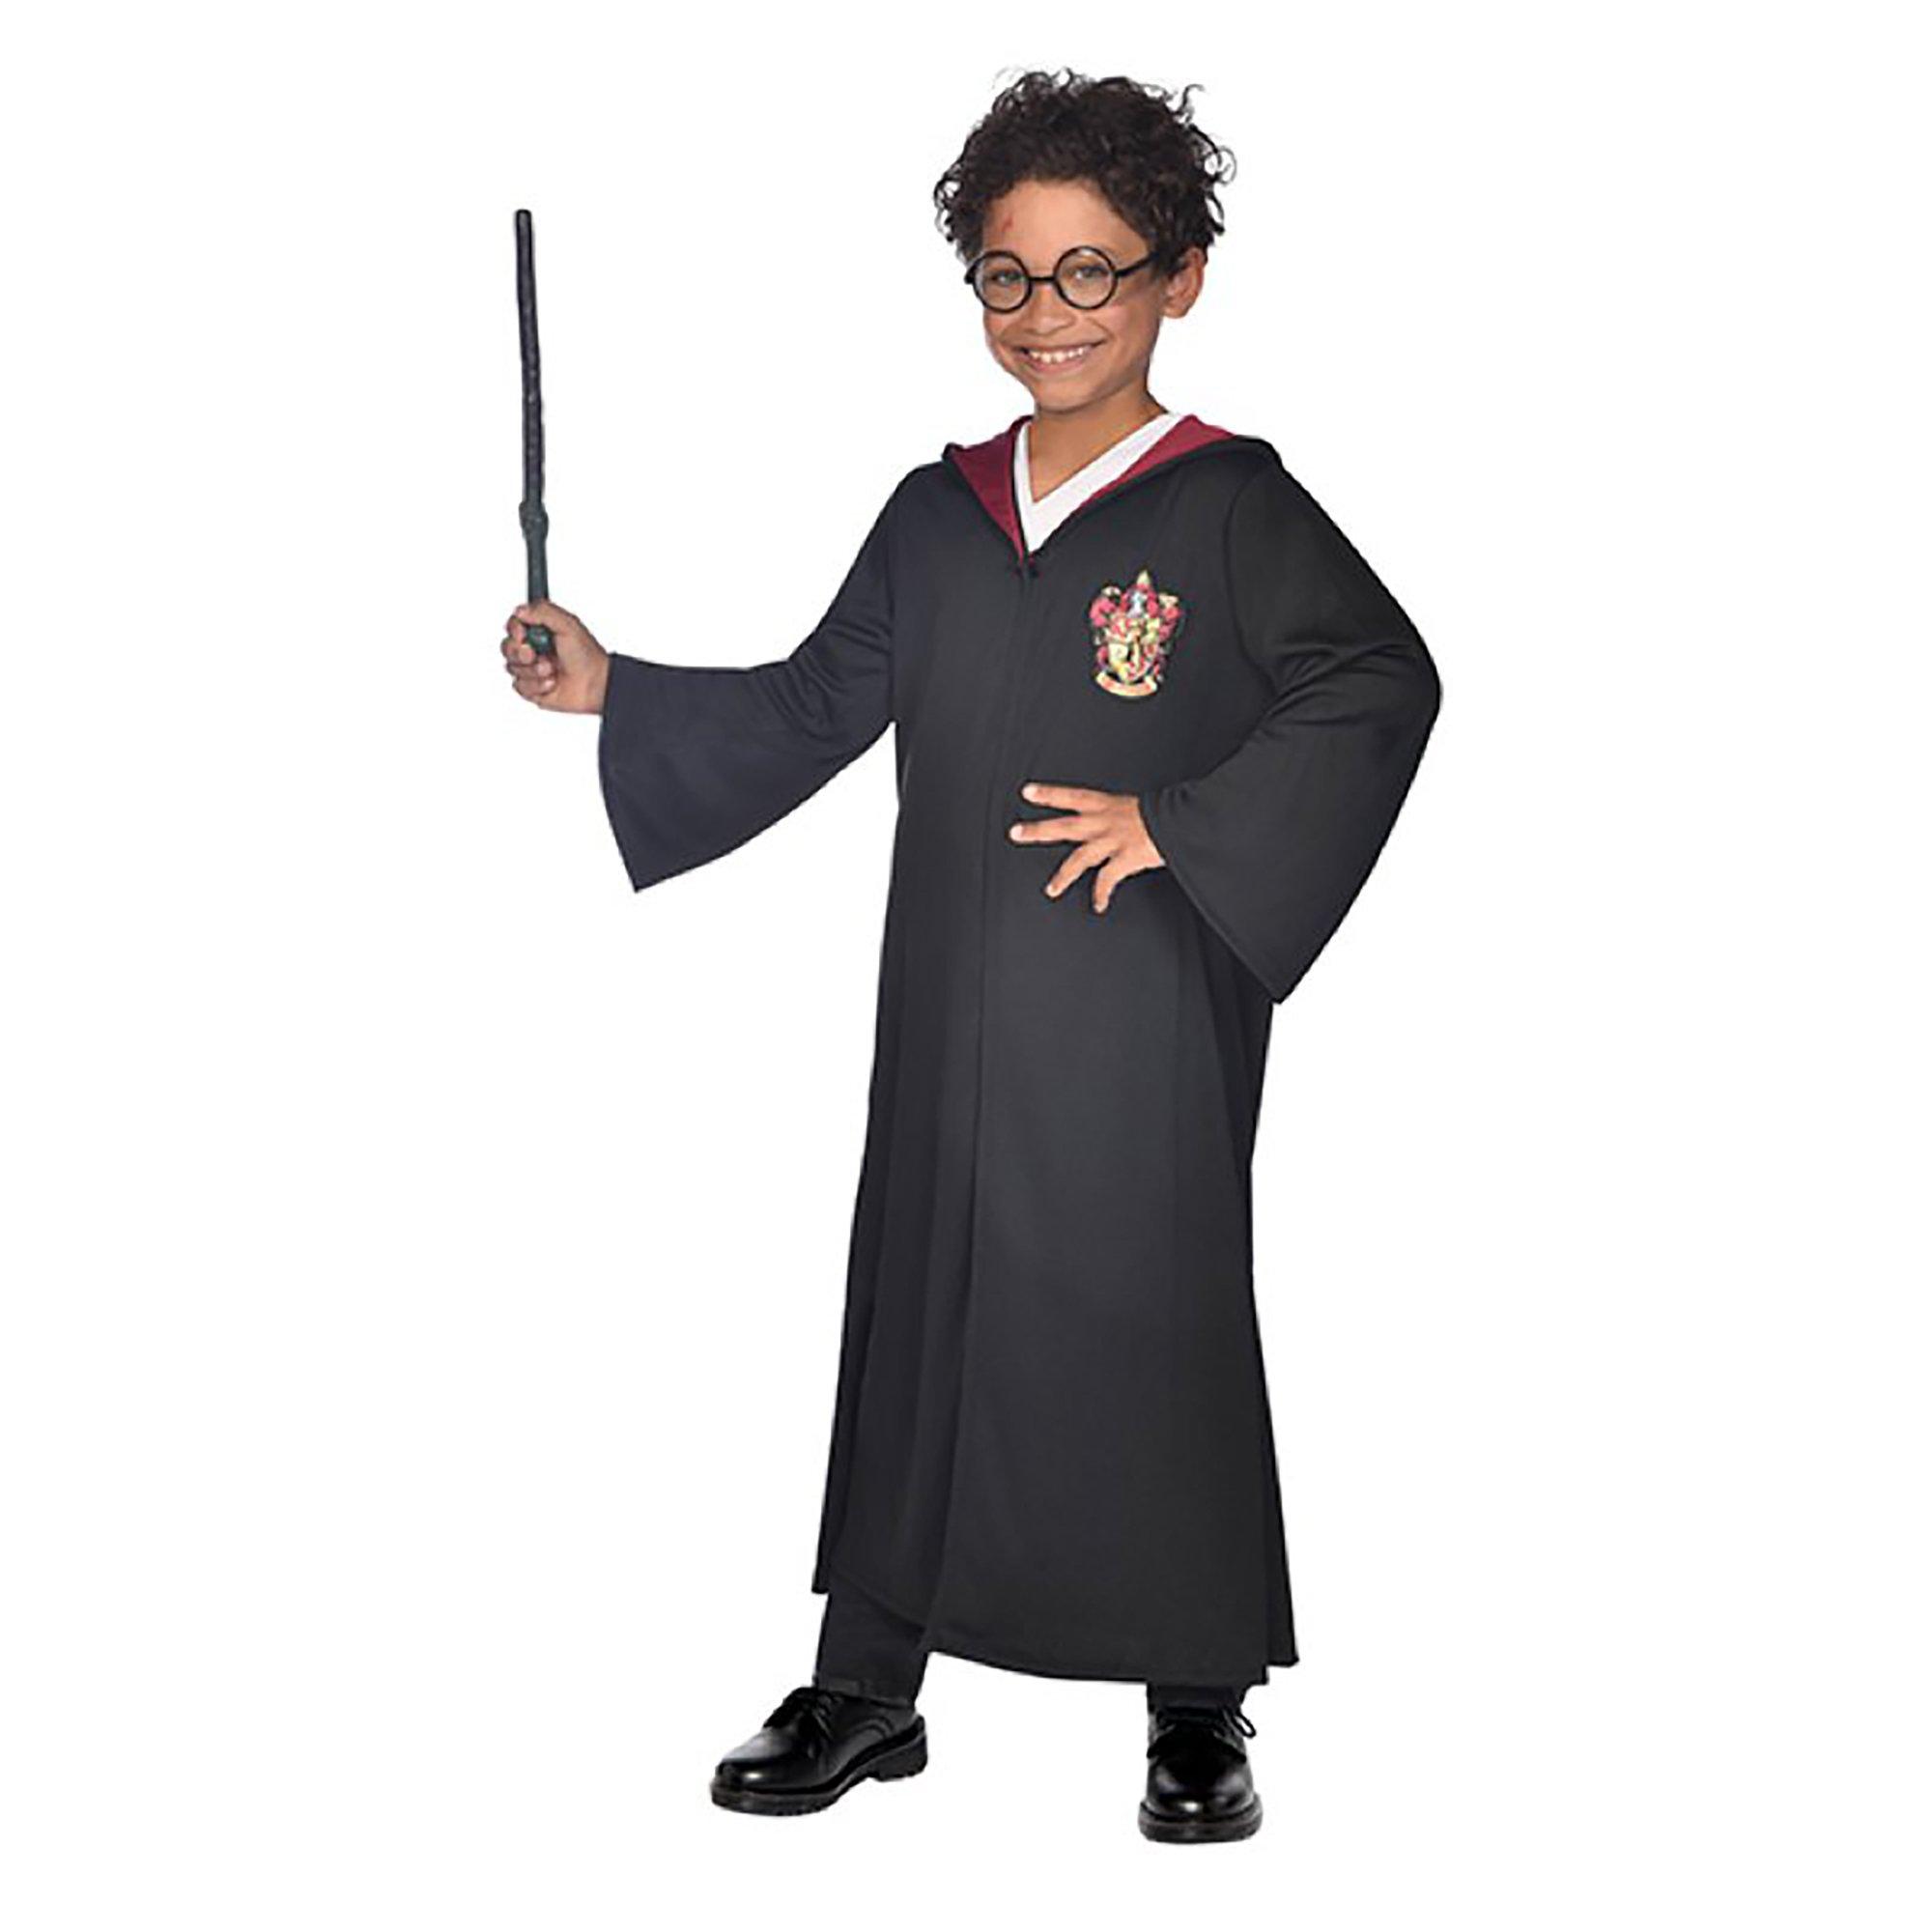 Image of amscan Harry Potter Kostüm mit Brille und Zauberstab - S